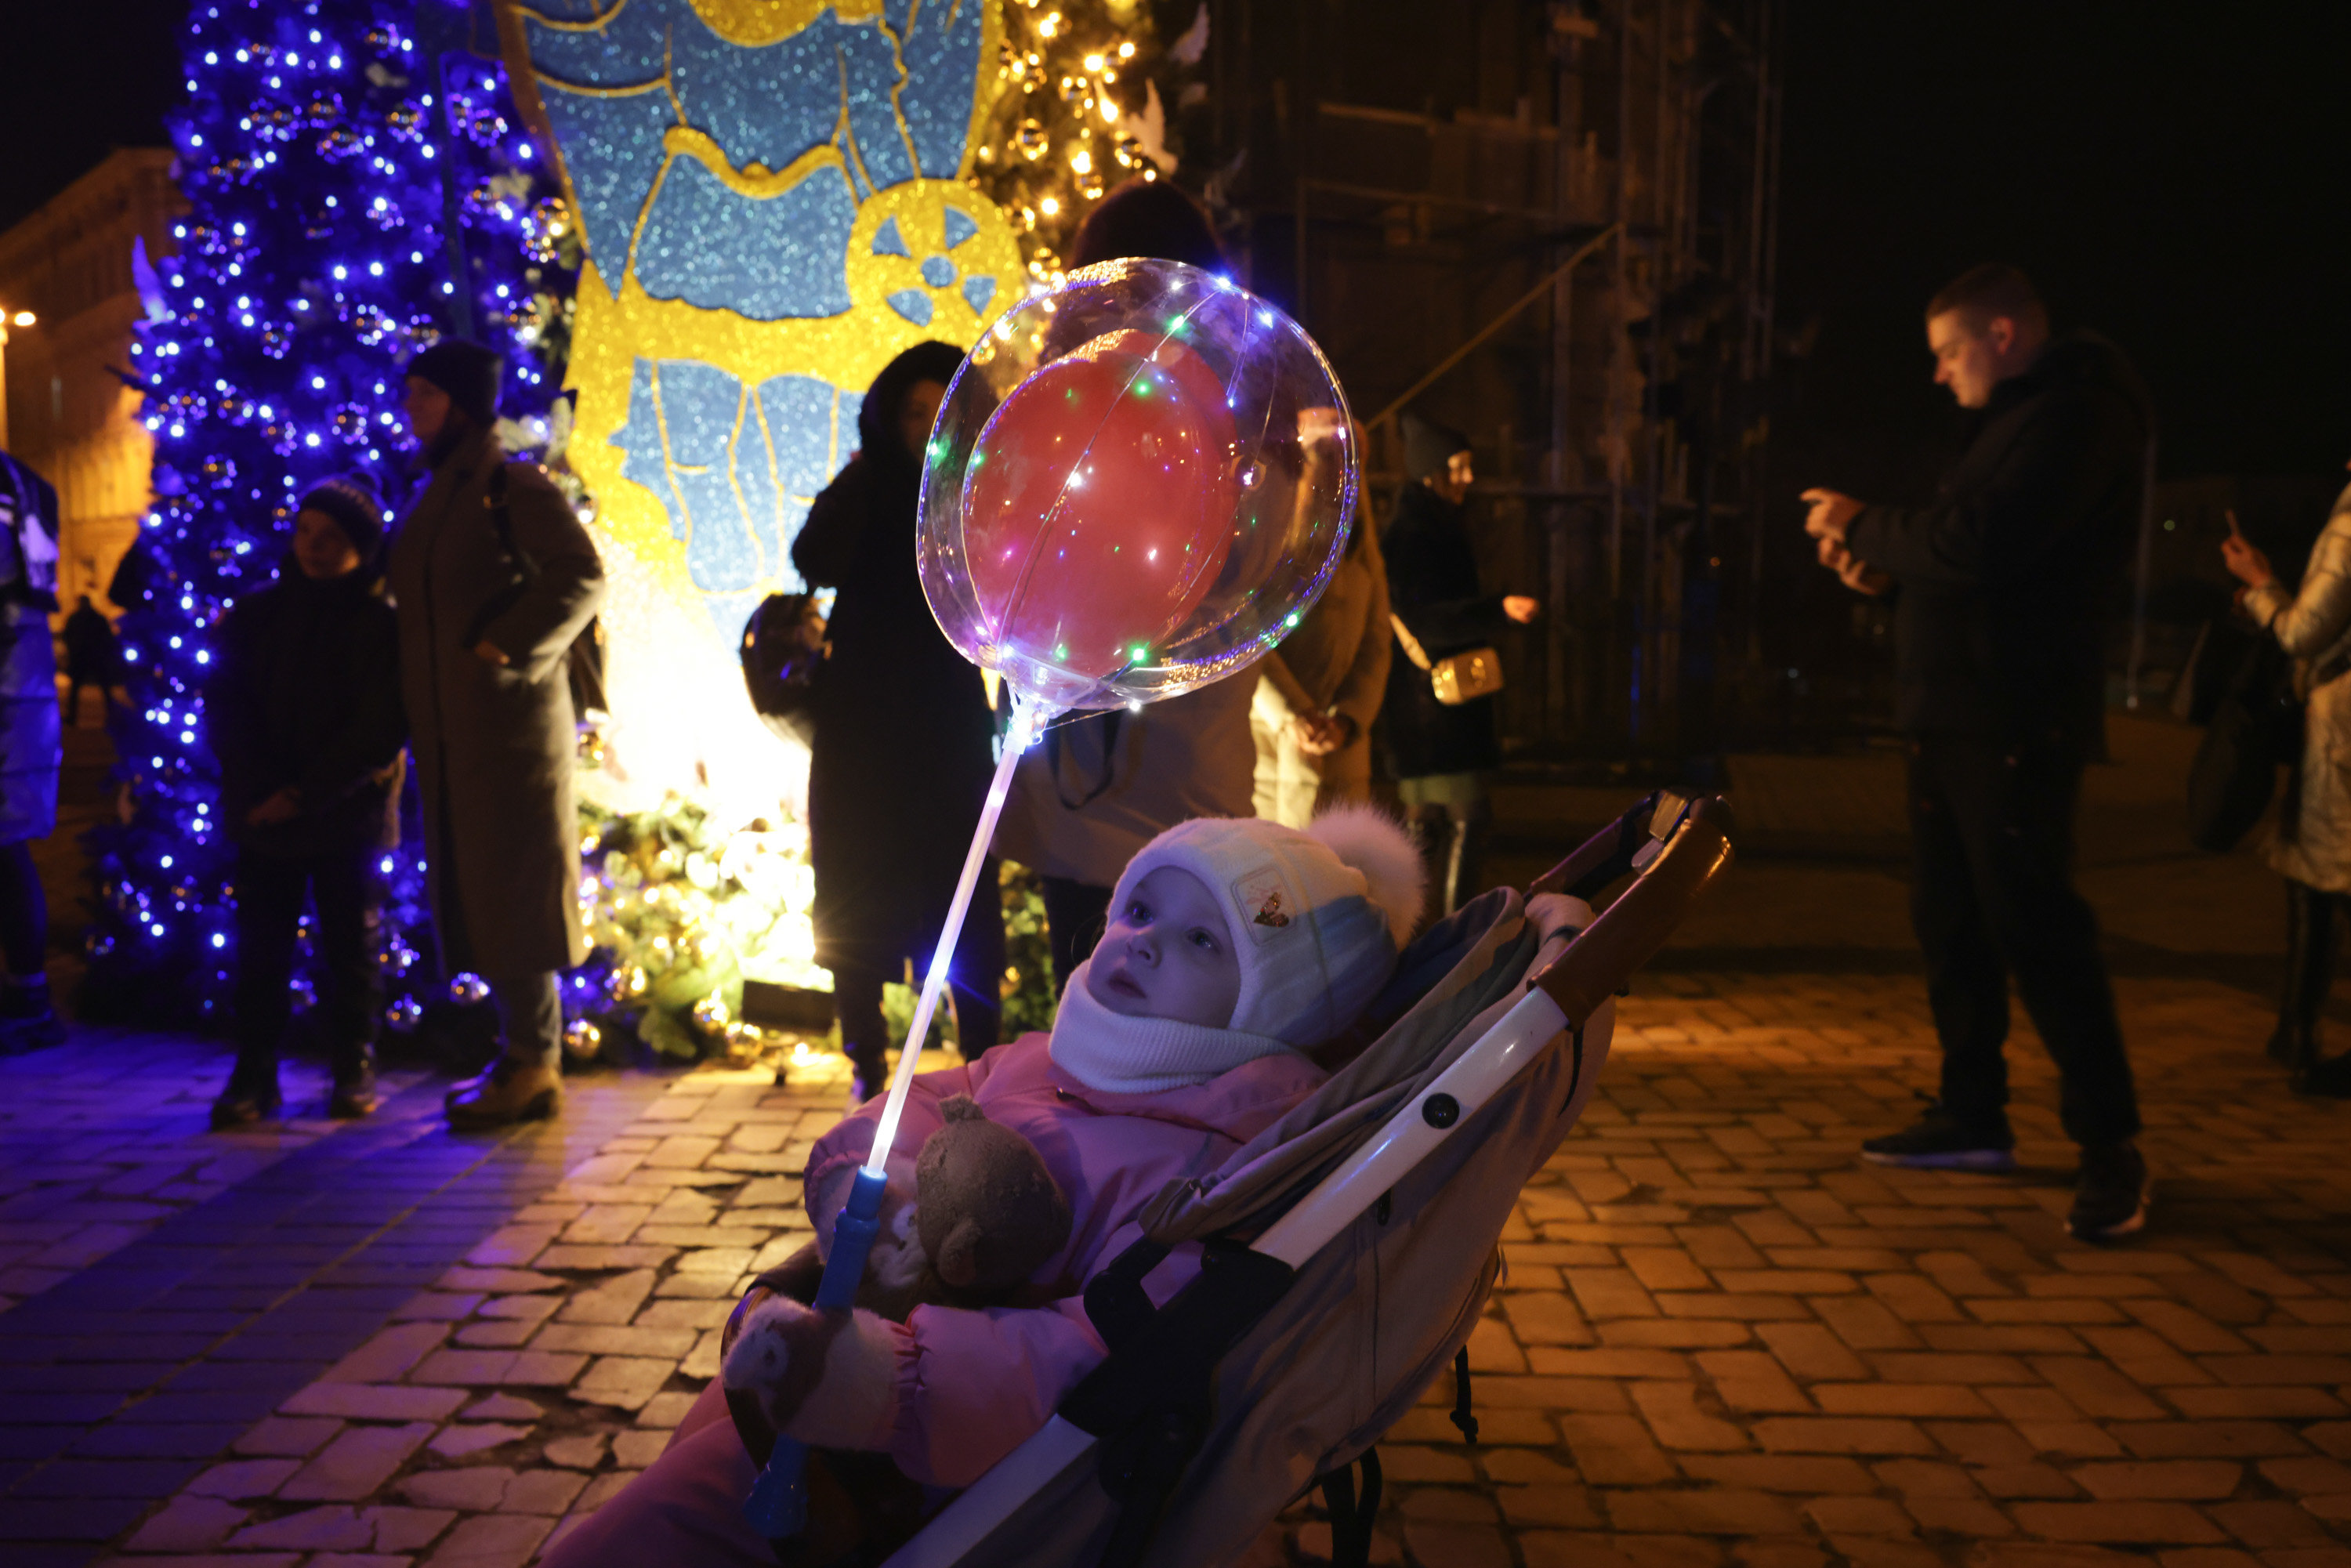 À Kiev, ce vendredi, sur la place de la cathédrale Sainte-Sophie, les familles ukrainiennes se réunissent malgré la guerre pour commencer à célébrer Noël. LP/Philippe de Poulpiquet